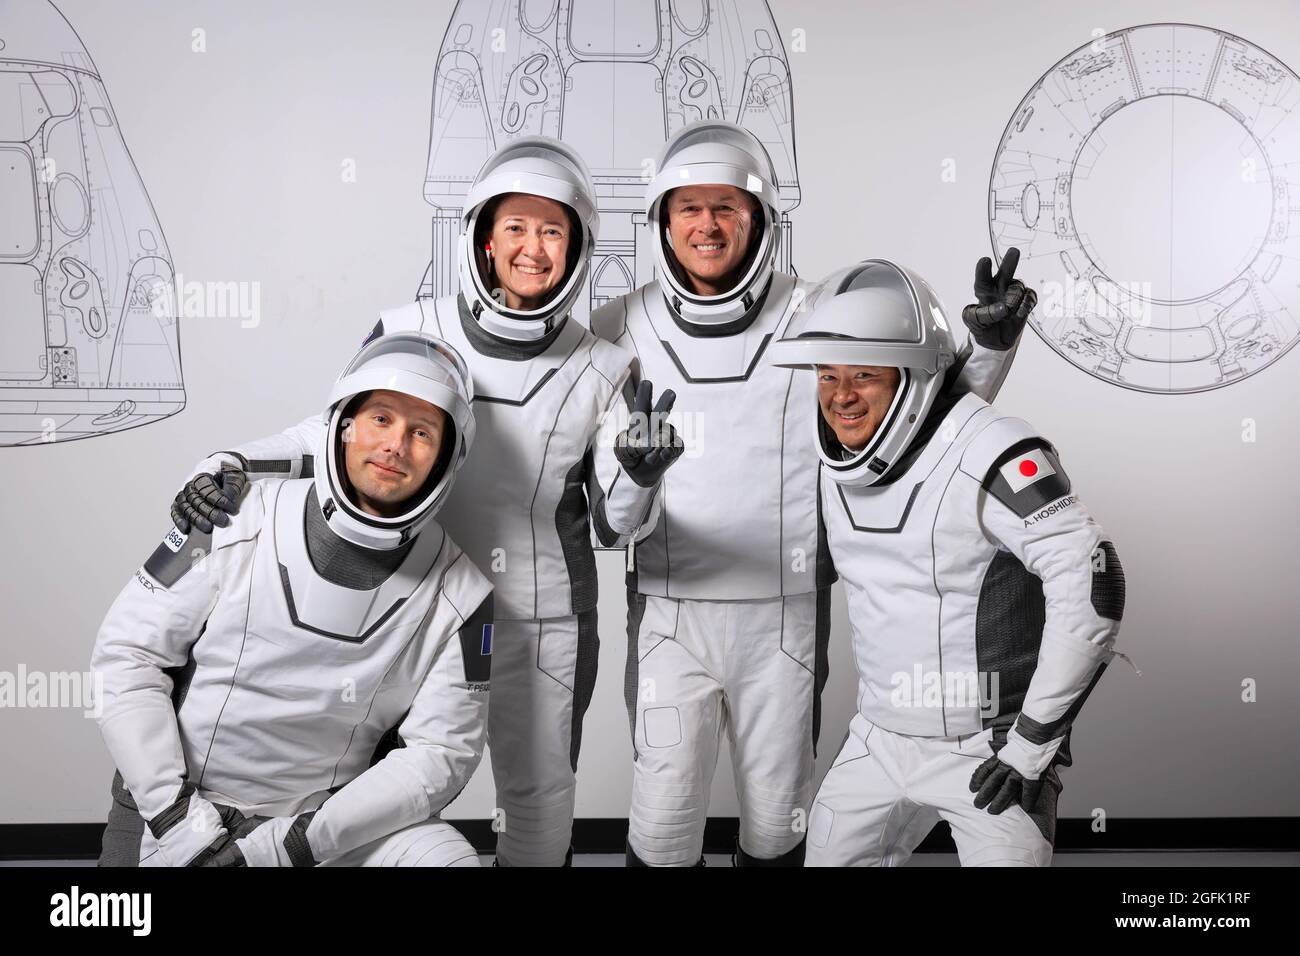 USA, 2021/04/03: SpaceX Crew 2, zweiter operativer Flug einer Crew-Dragon-Raumsonde mit vier Astronauten. Shane Kimbrough, Megan Mc Stockfoto